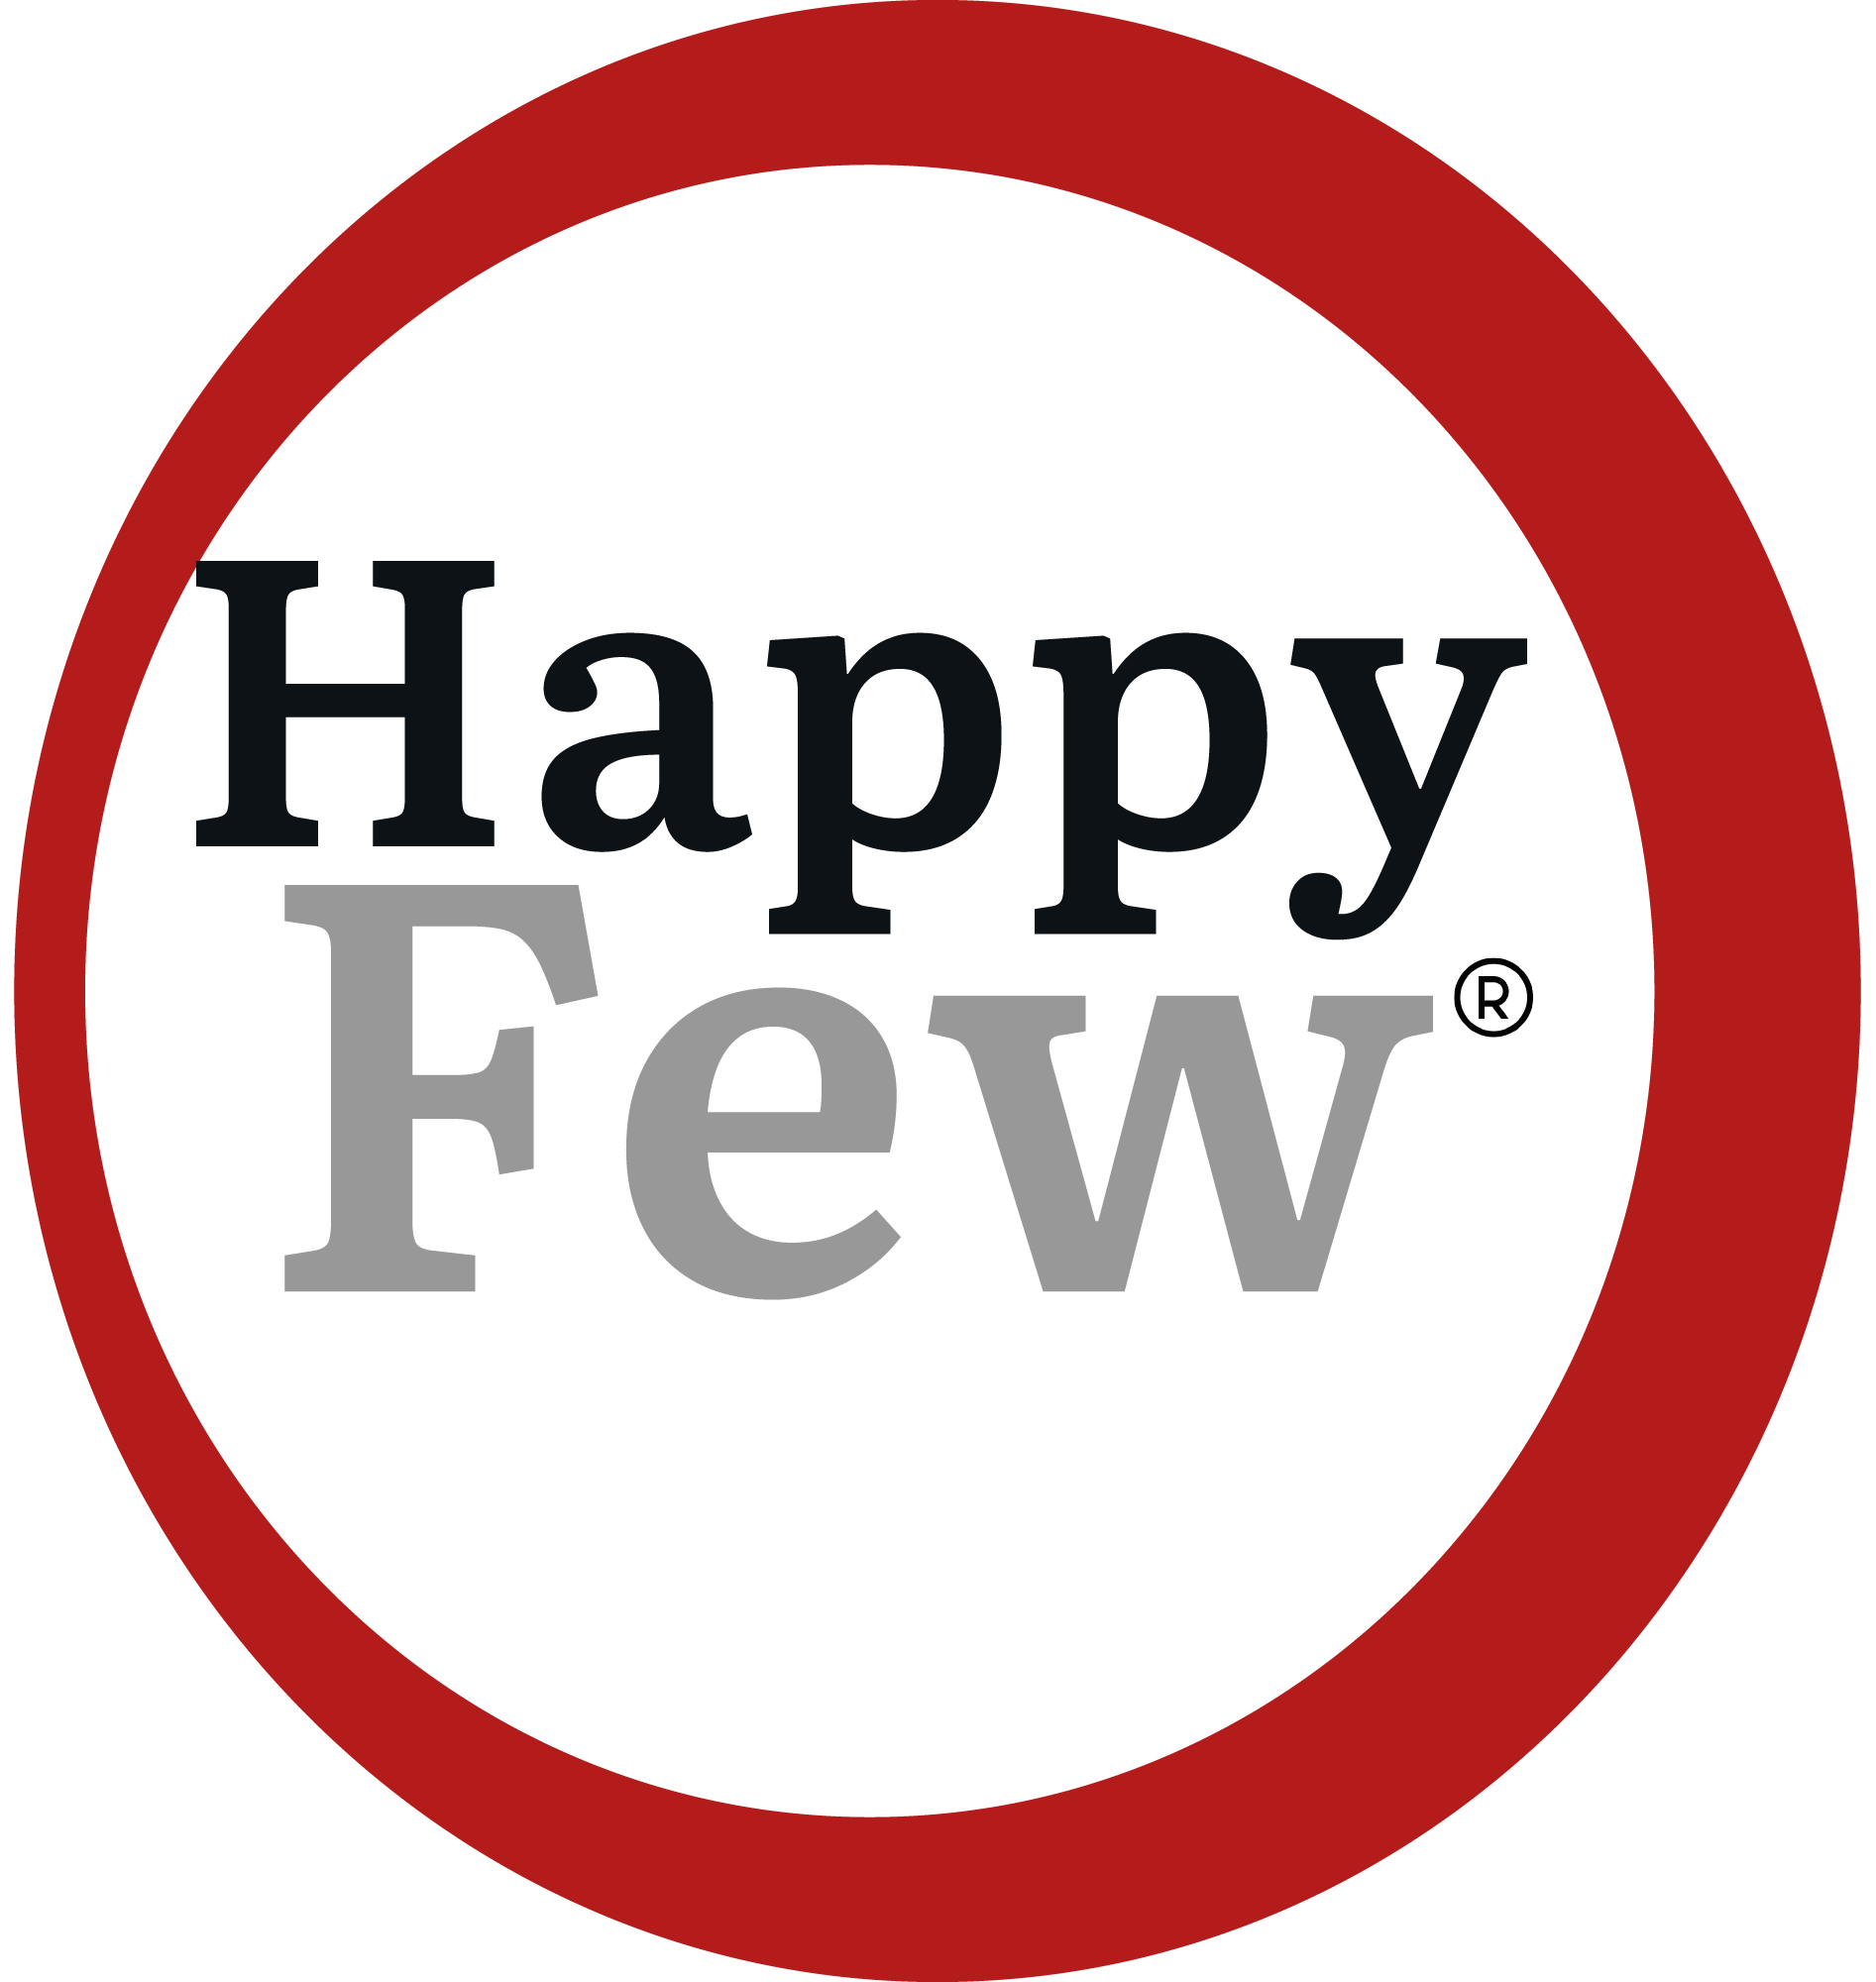 logo da happyfew